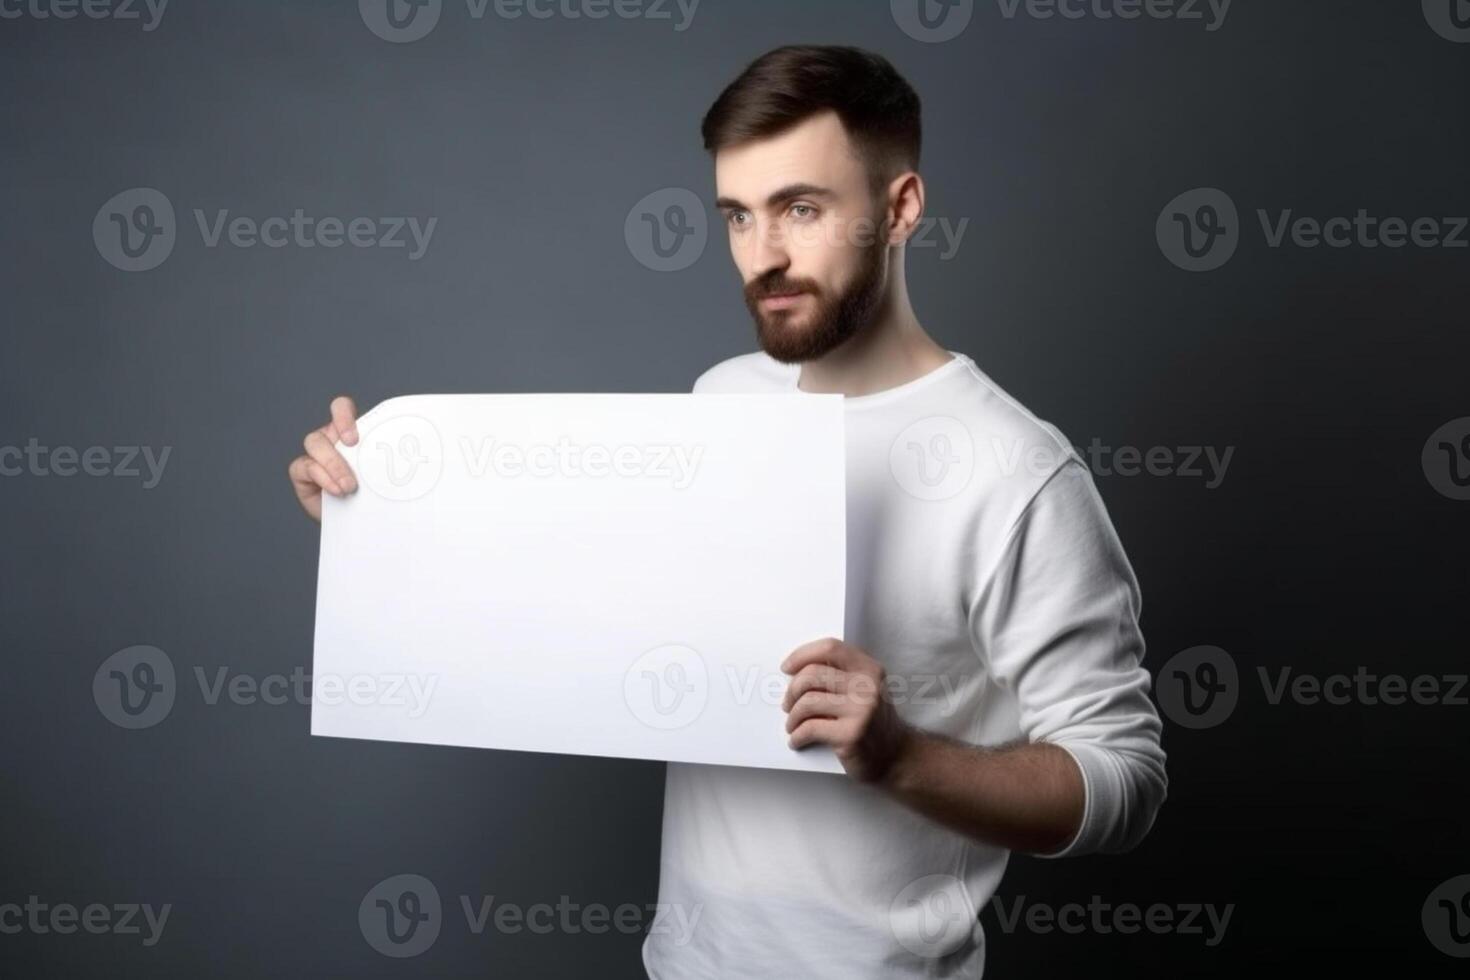 ai generativ ein Mann hält ein leer Weiß Zeichen Tafel Attrappe, Lehrmodell, Simulation im seine Hand foto